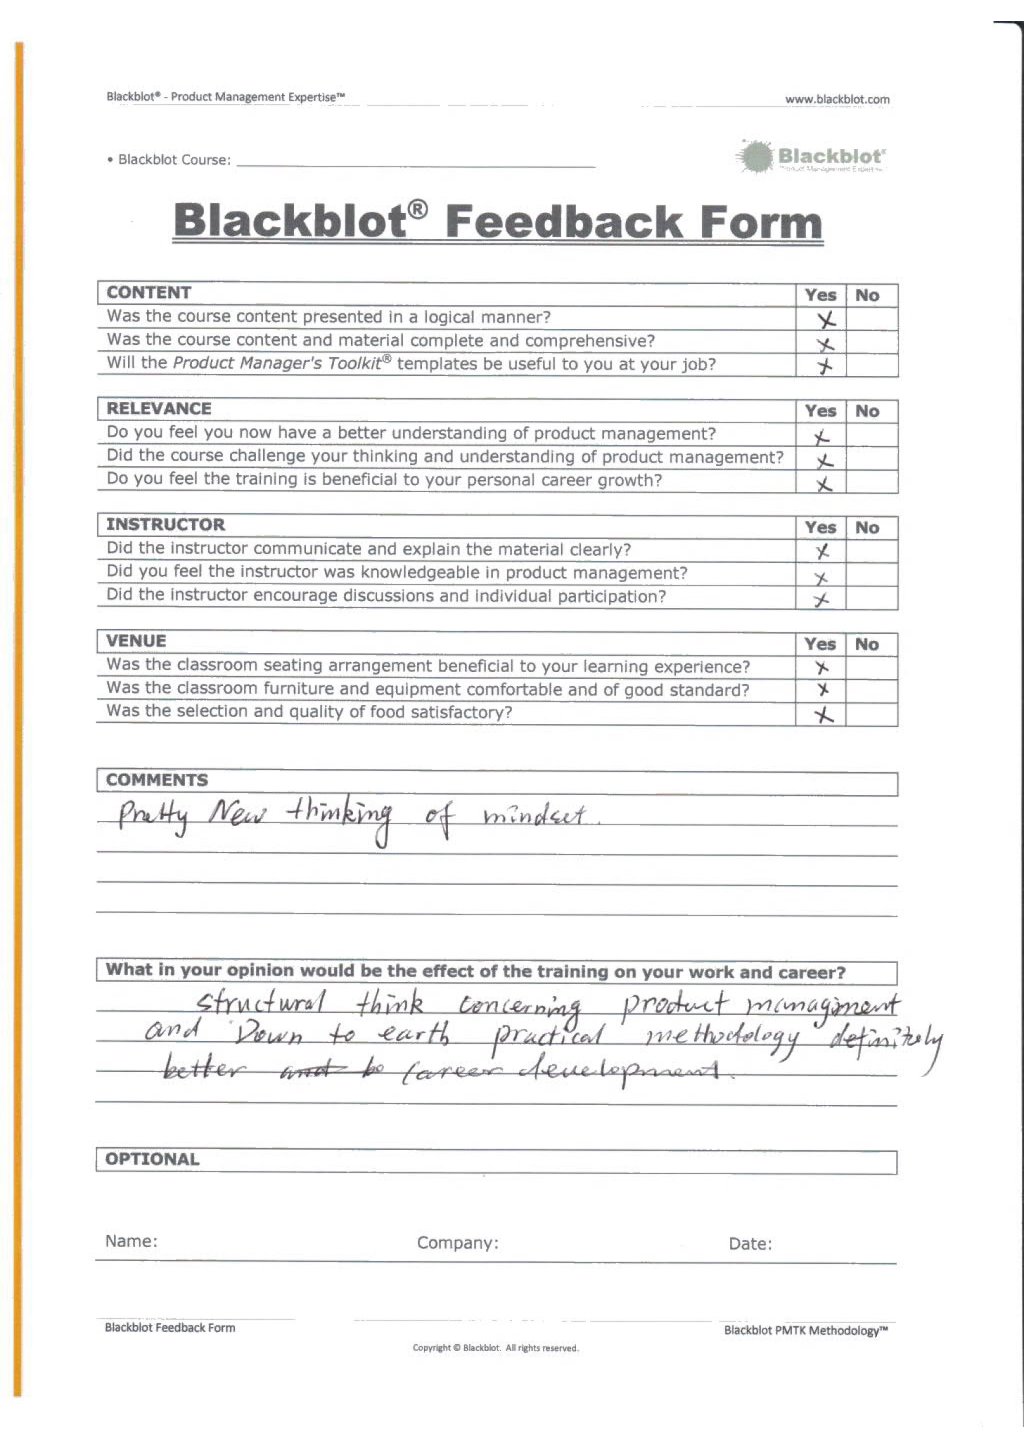 Blackblot: Blackblot_Strategic_Product_Management_Feedback_Form_028.jpg